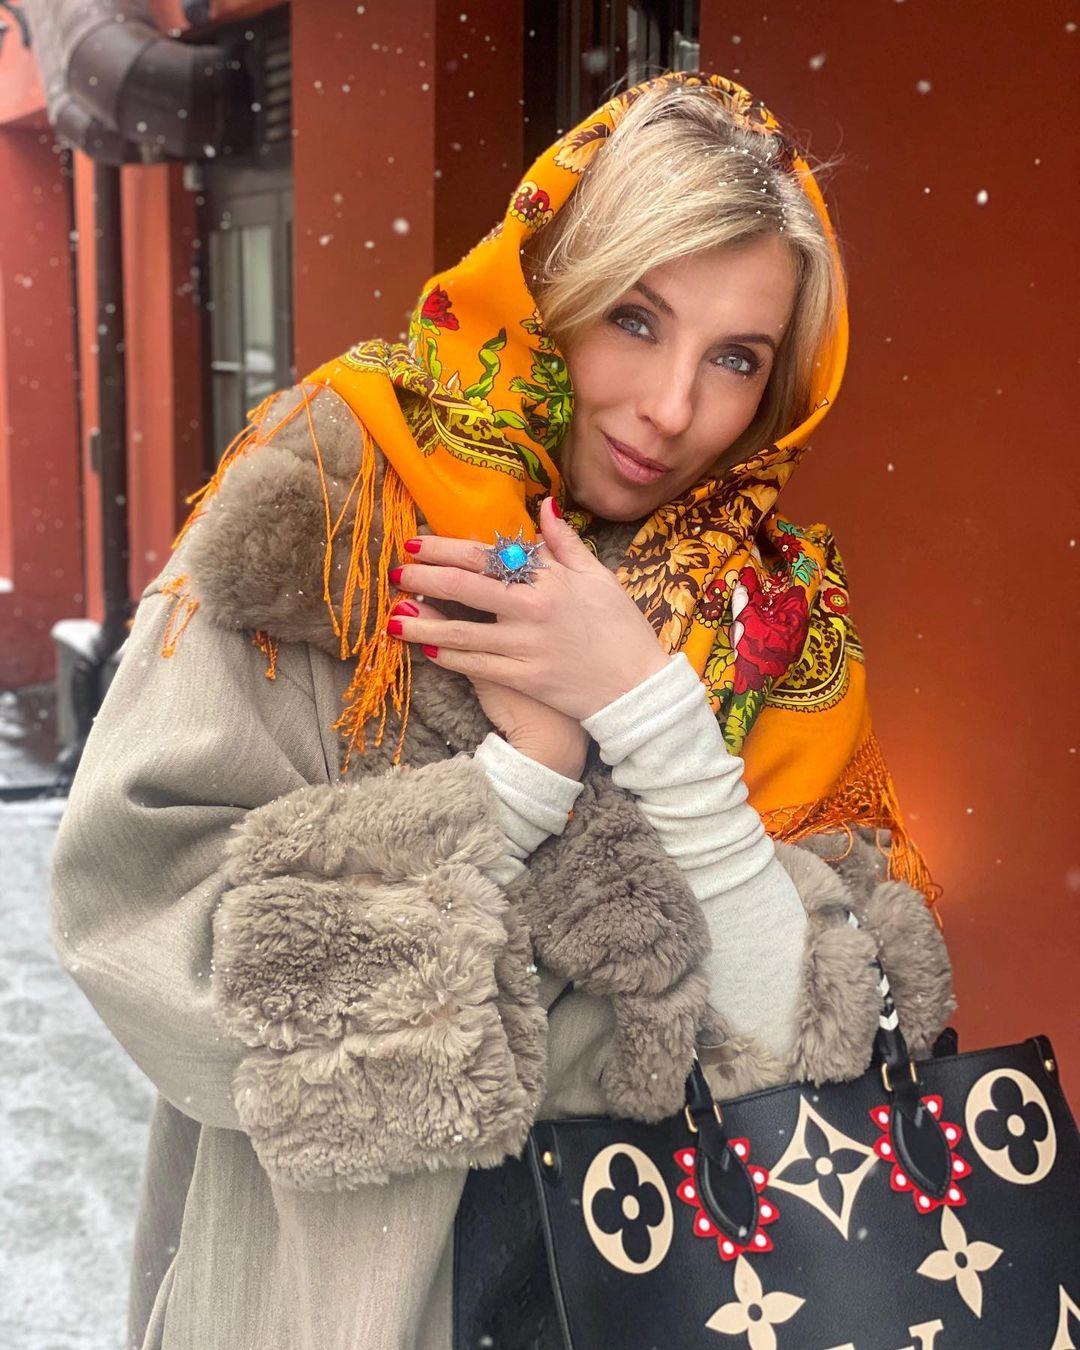 Светлана Бондарчук похвасталась растяжкой в соблазнительном комбинезоне